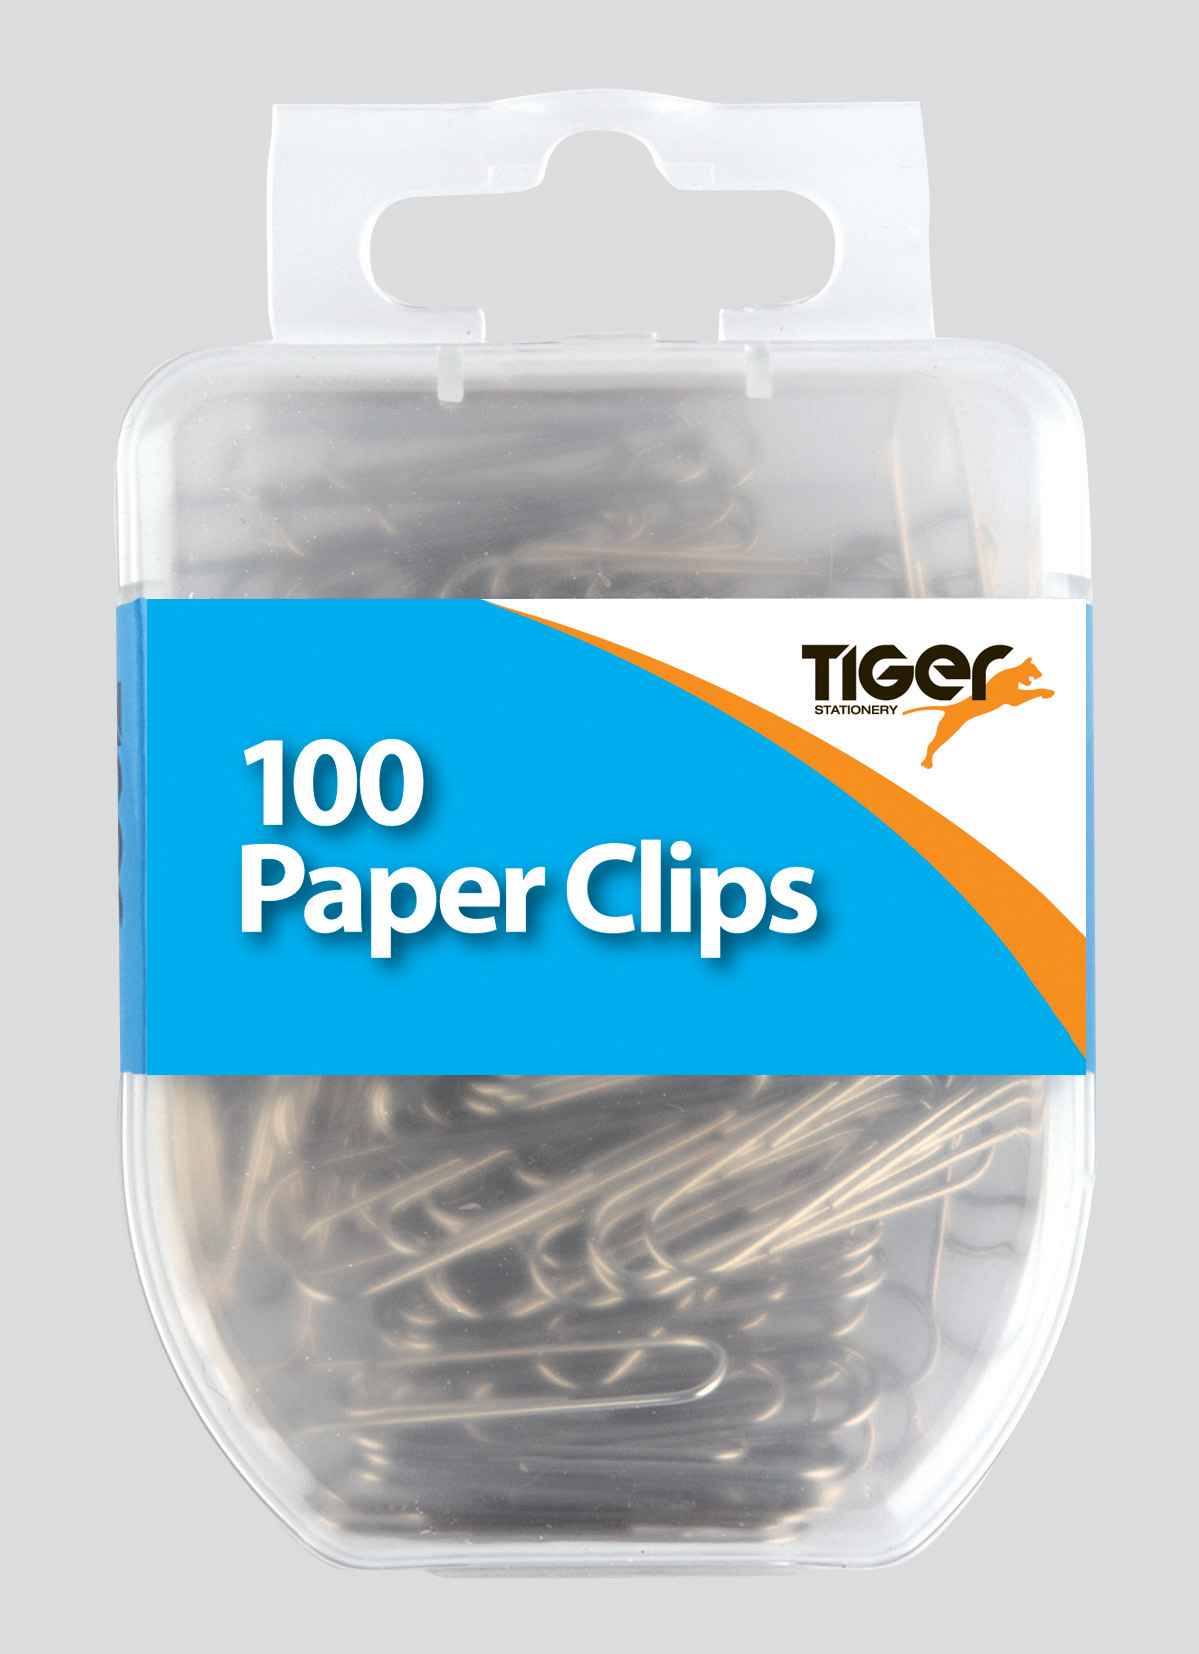 Tiger Paper Clips 100pcs.